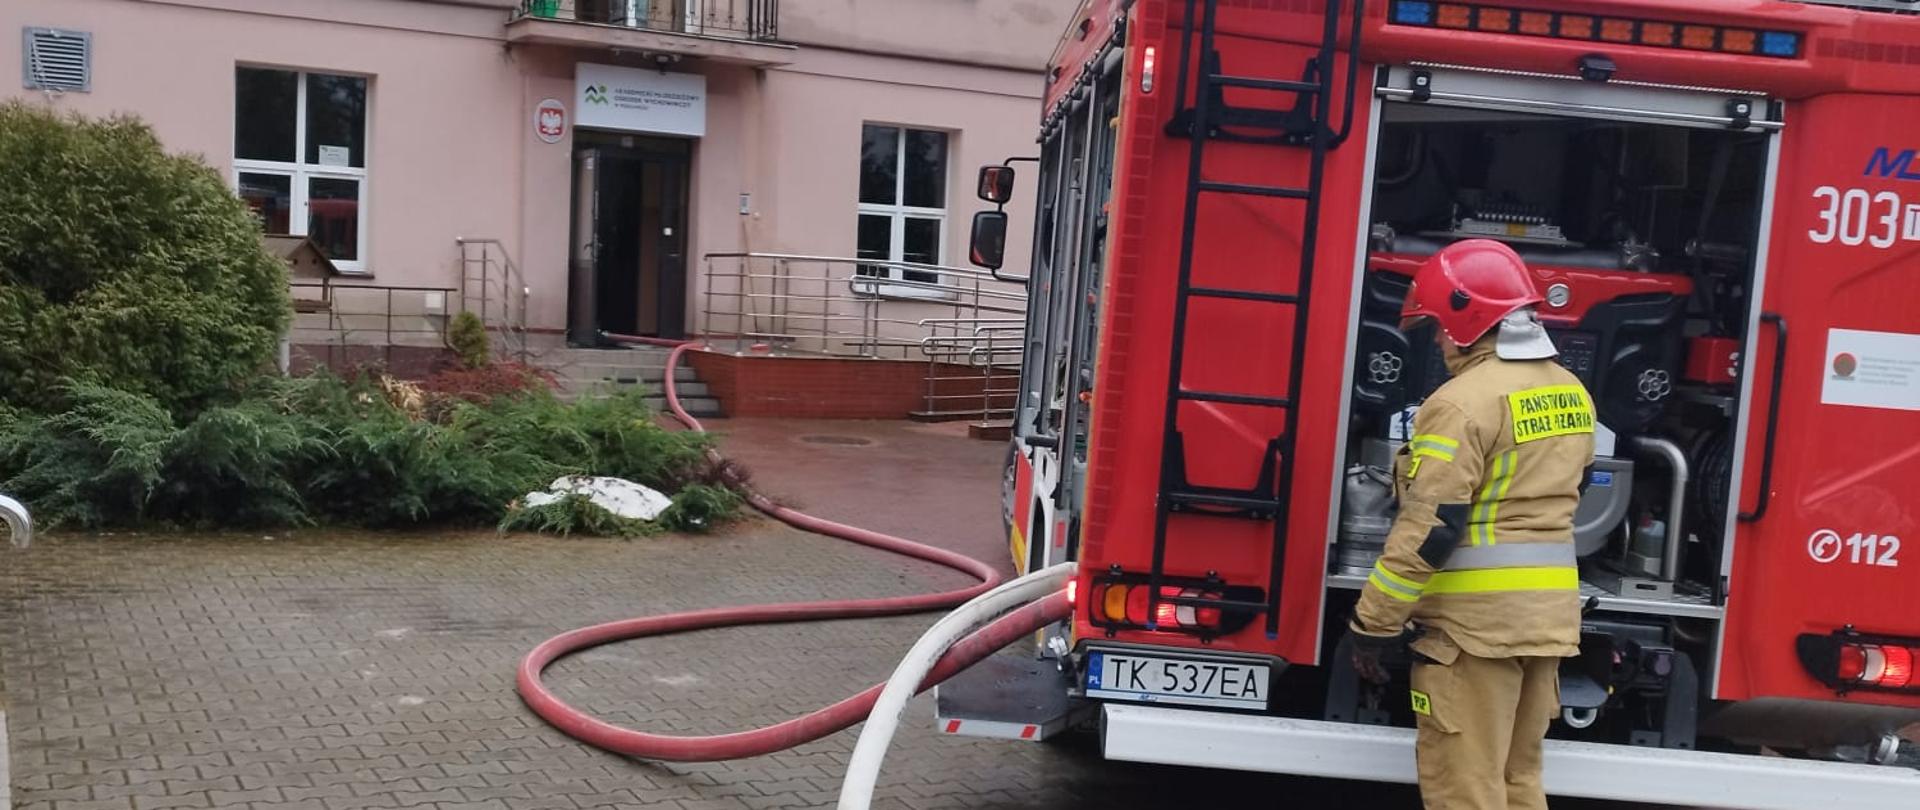 Zdjęcie przedstawia budynek ośrodka wychowawczego gdzie doszło do pożaru. Przed budynkiem stoi samochód pożarniczy, do którego podpięty jest wąż gaśniczy wchodzący do wnet raz obiektu. Przy samochodzie stoi strażak.